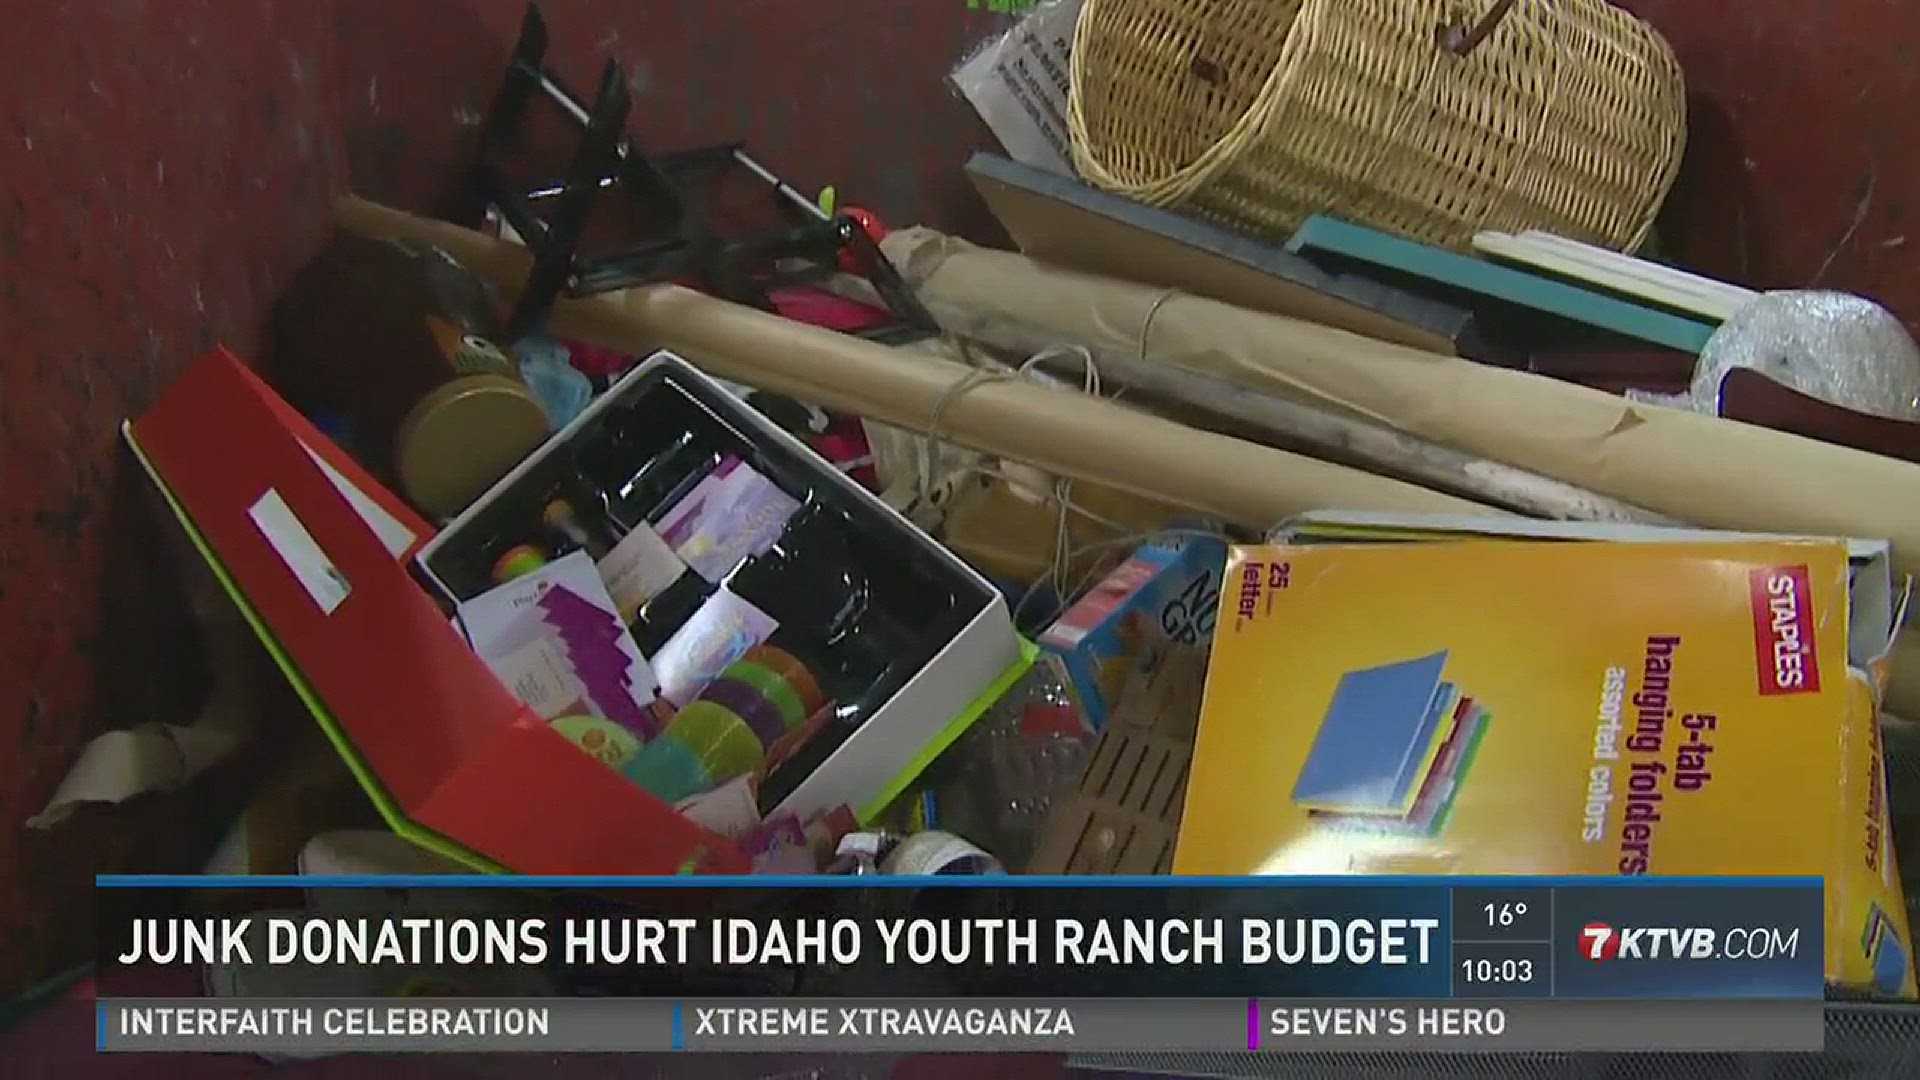 Junk donations hurt Idaho Youth Ranch budget.